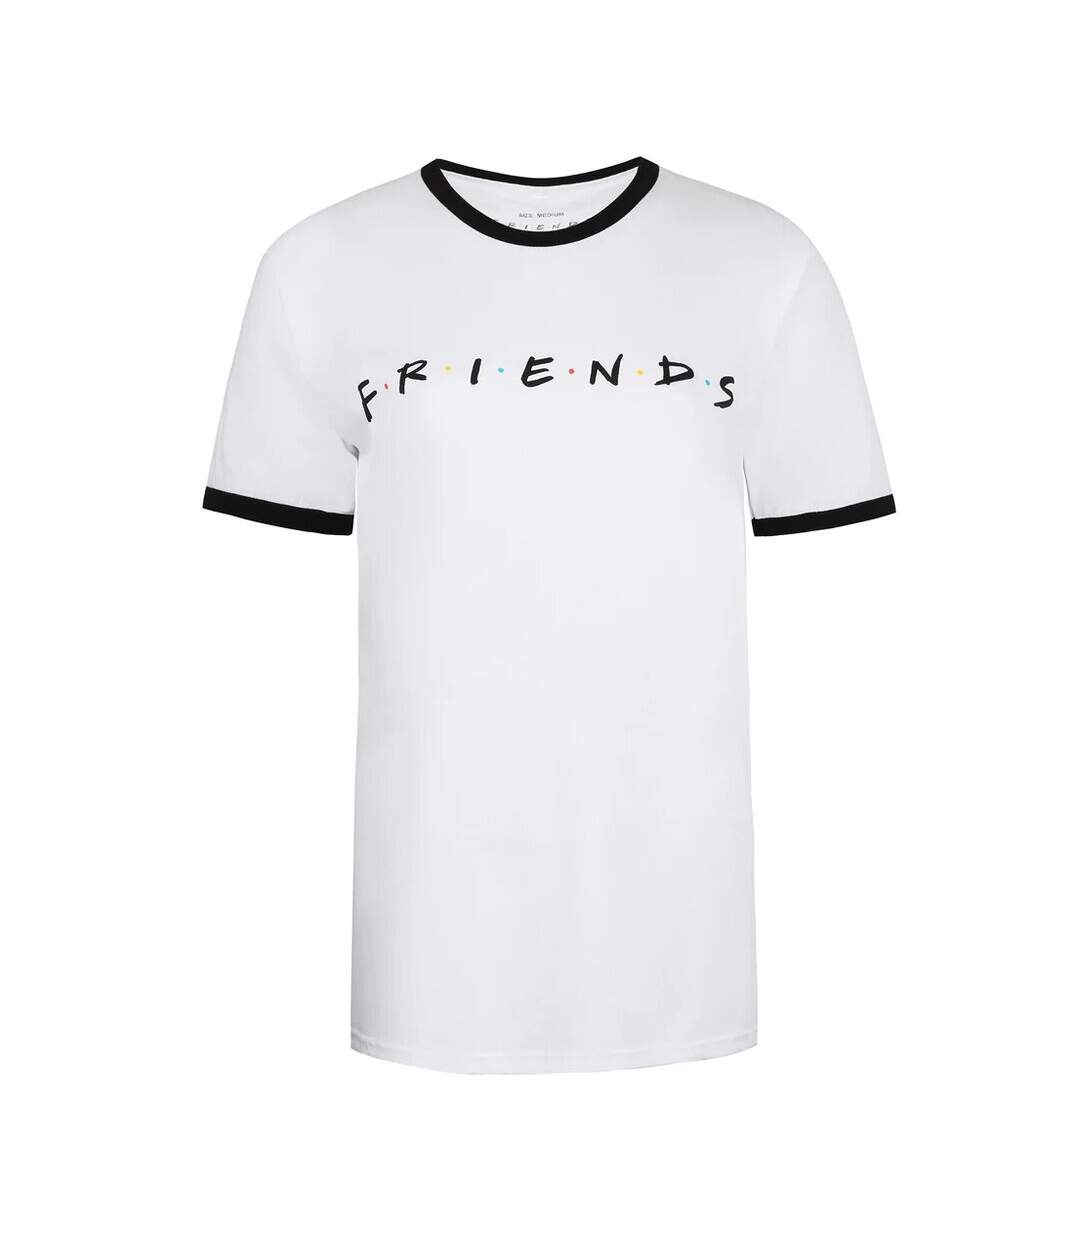 Friends - T-shirt - Femme (Blanc / Noir) - UTTV1103